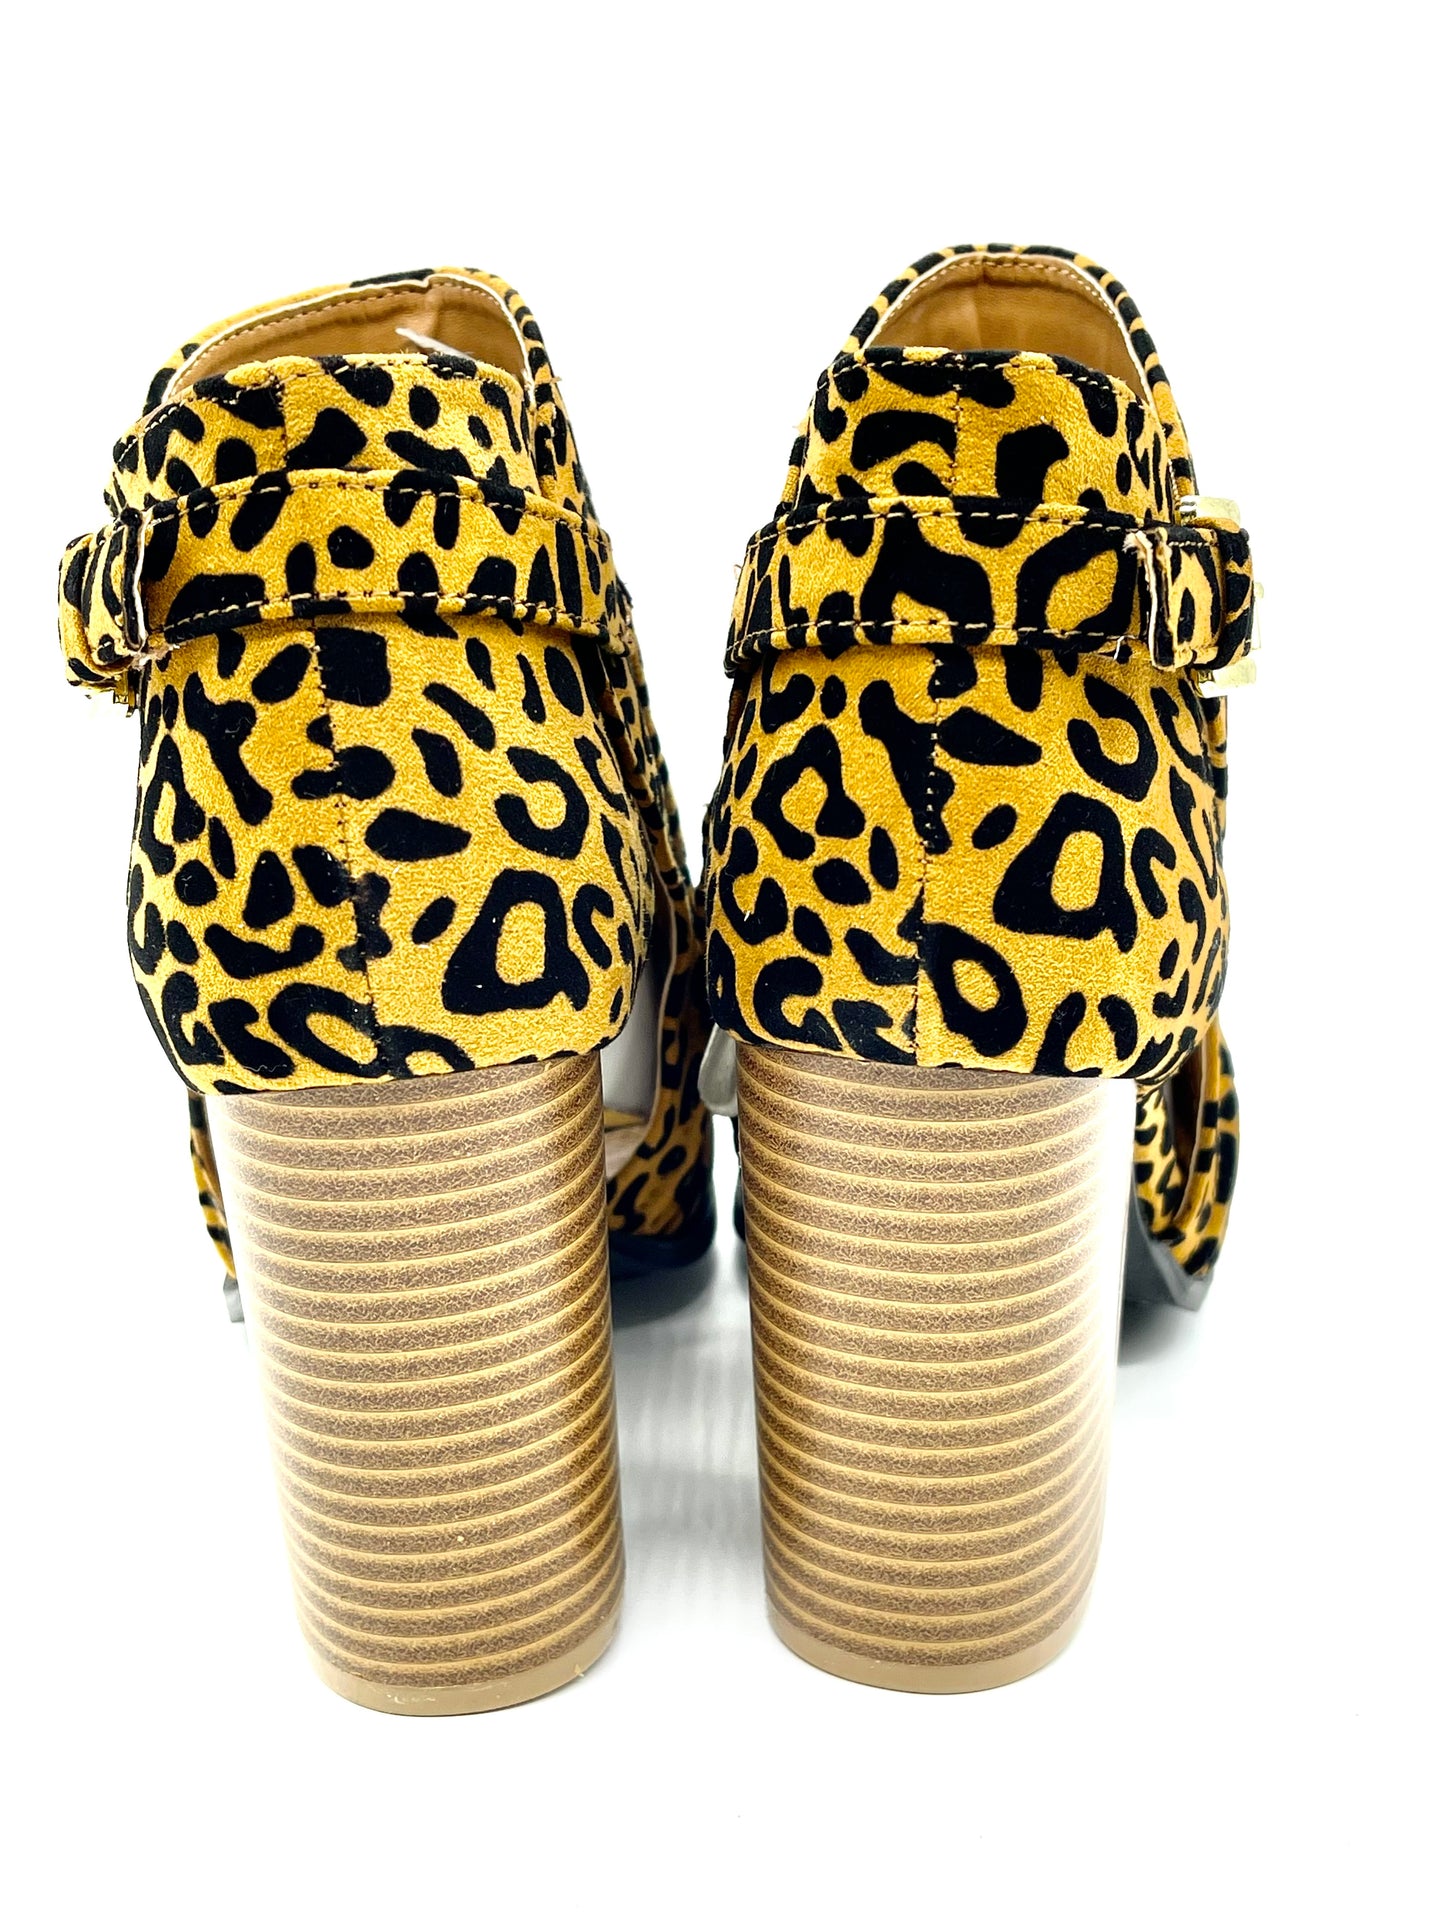 Leopard Booties